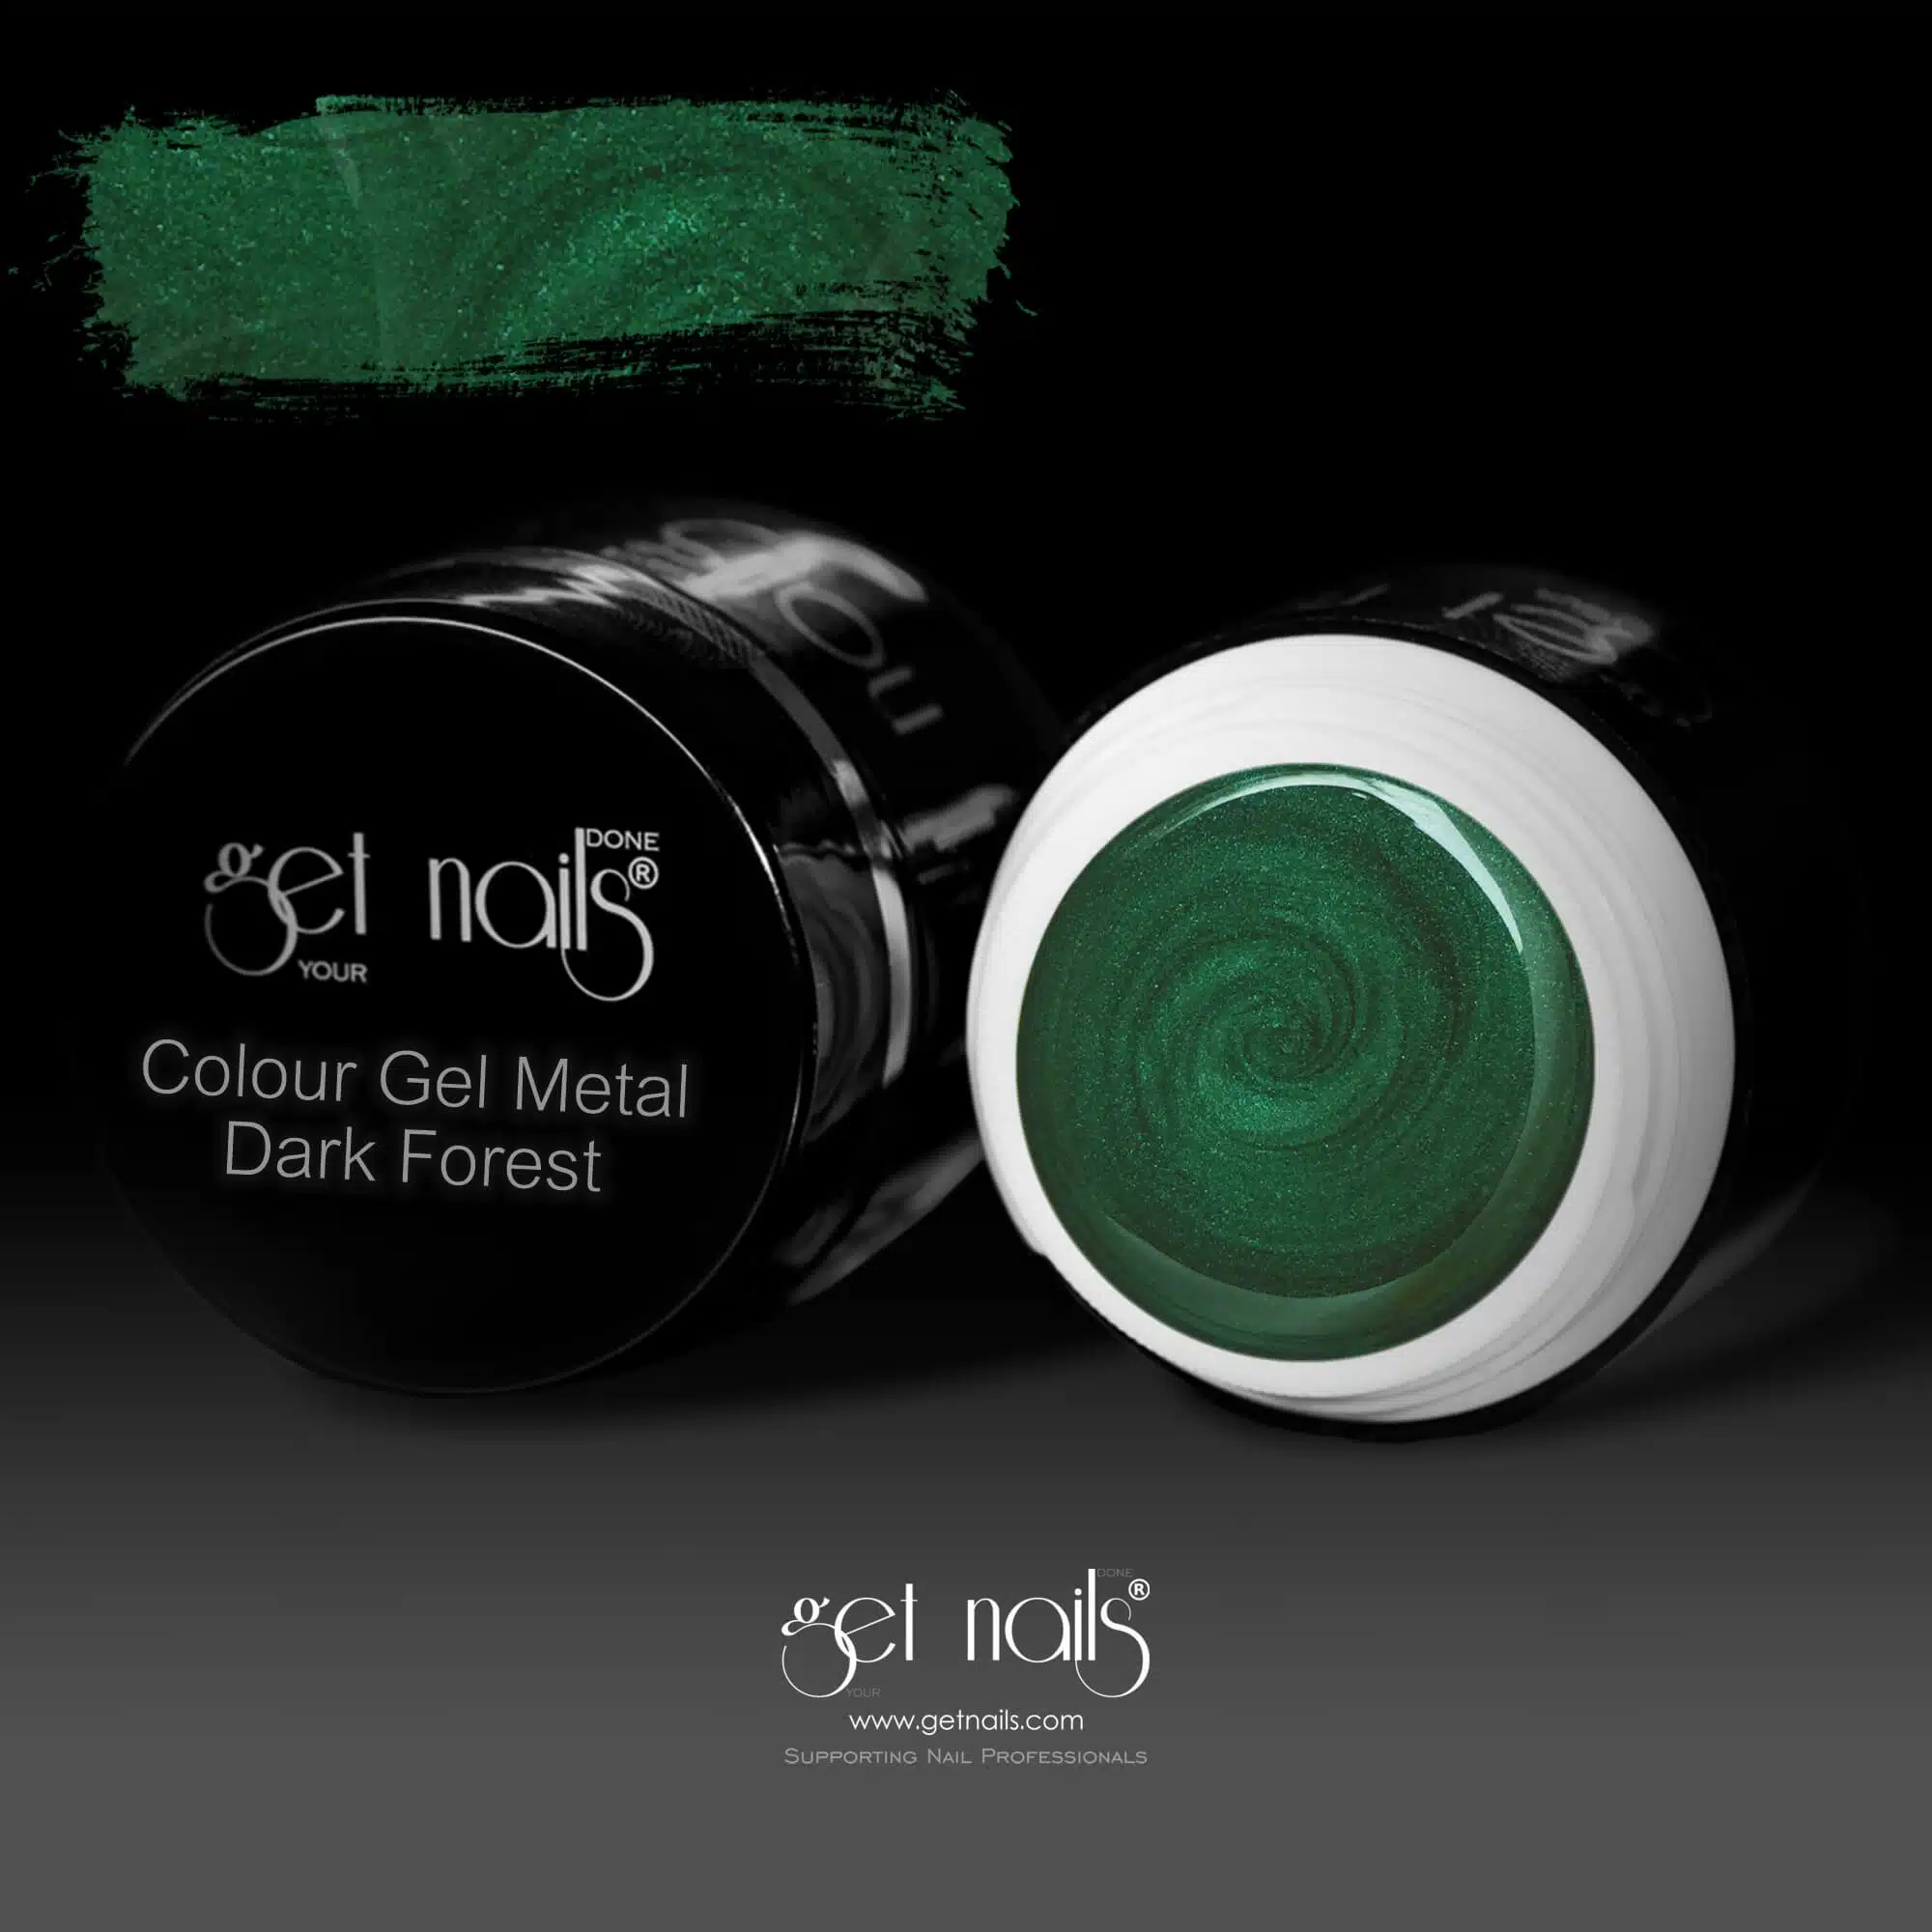 Get Nails Austria - Color Gel Metal Dark Forest 5g